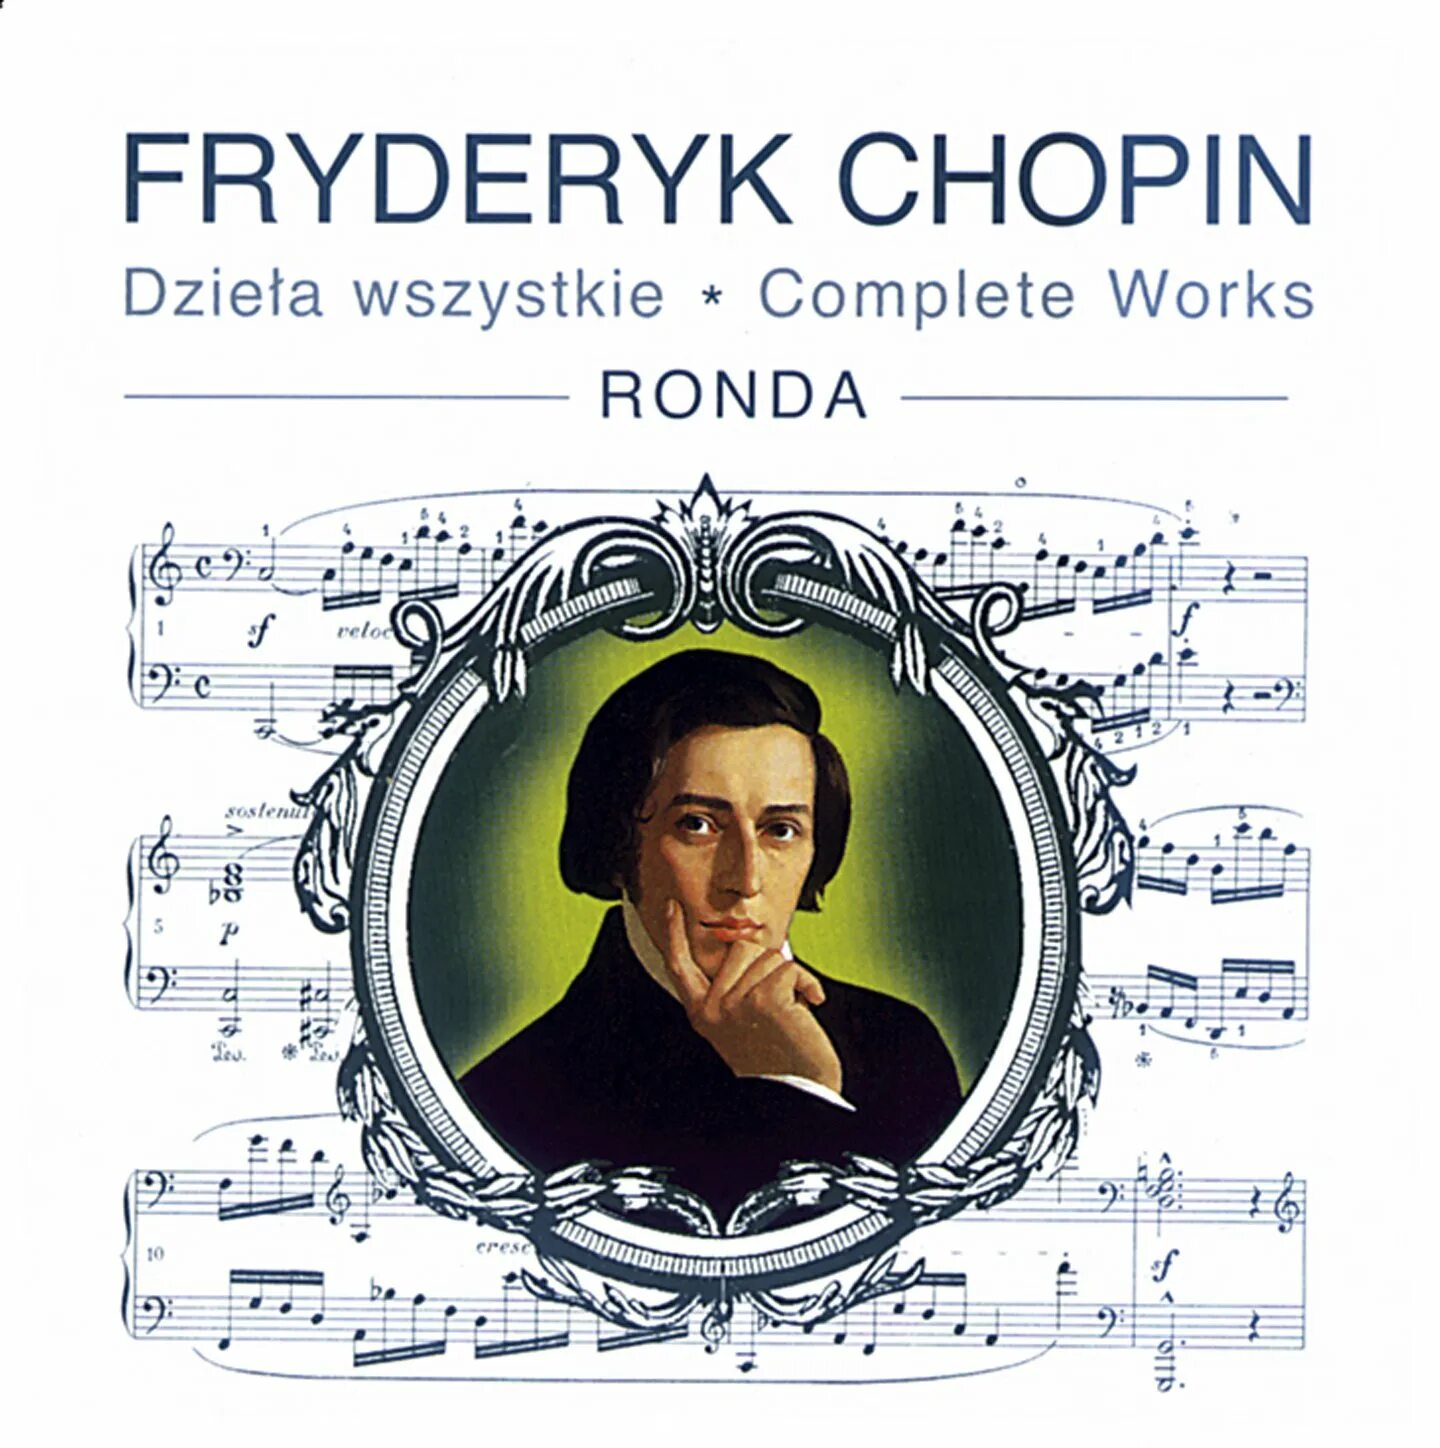 Шопен обложка. Fryderyk Chopin. Frédéric Chopin обложка. Произведения Шопена.